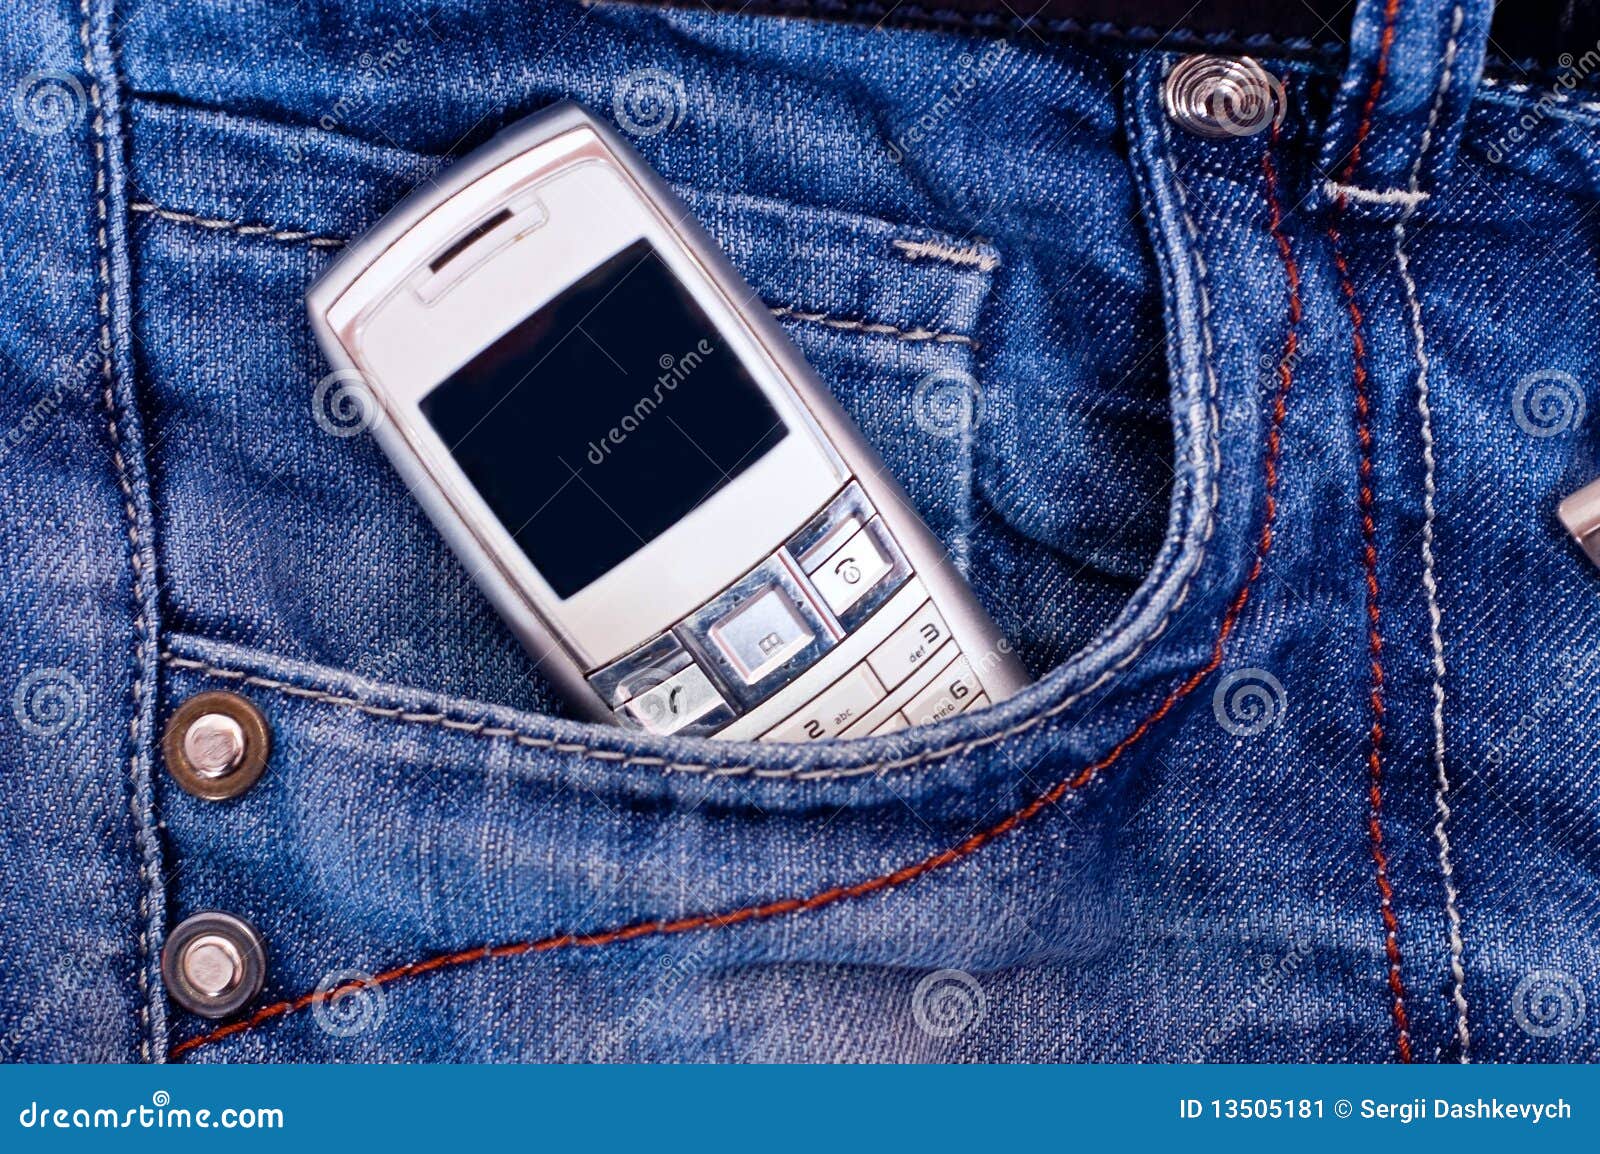 Teléfono Celular En Bolsillo Imagen de archivo - Imagen de